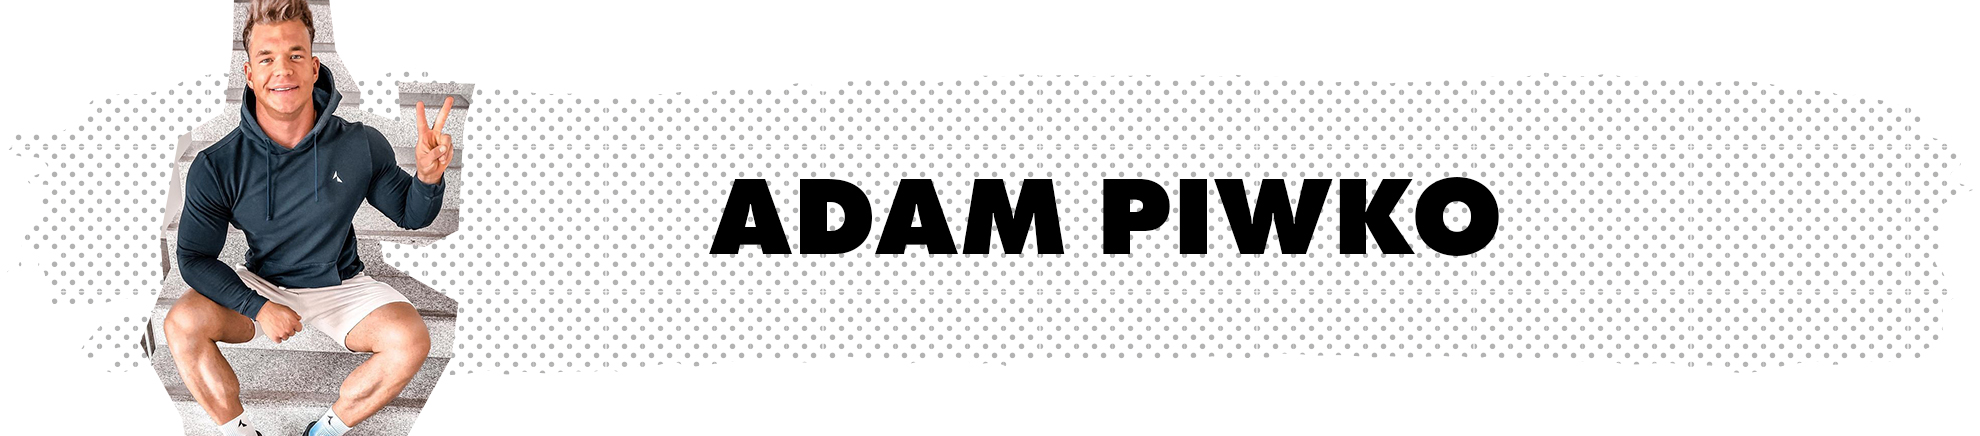 Adam Piwko - Carpatree brand ambassador